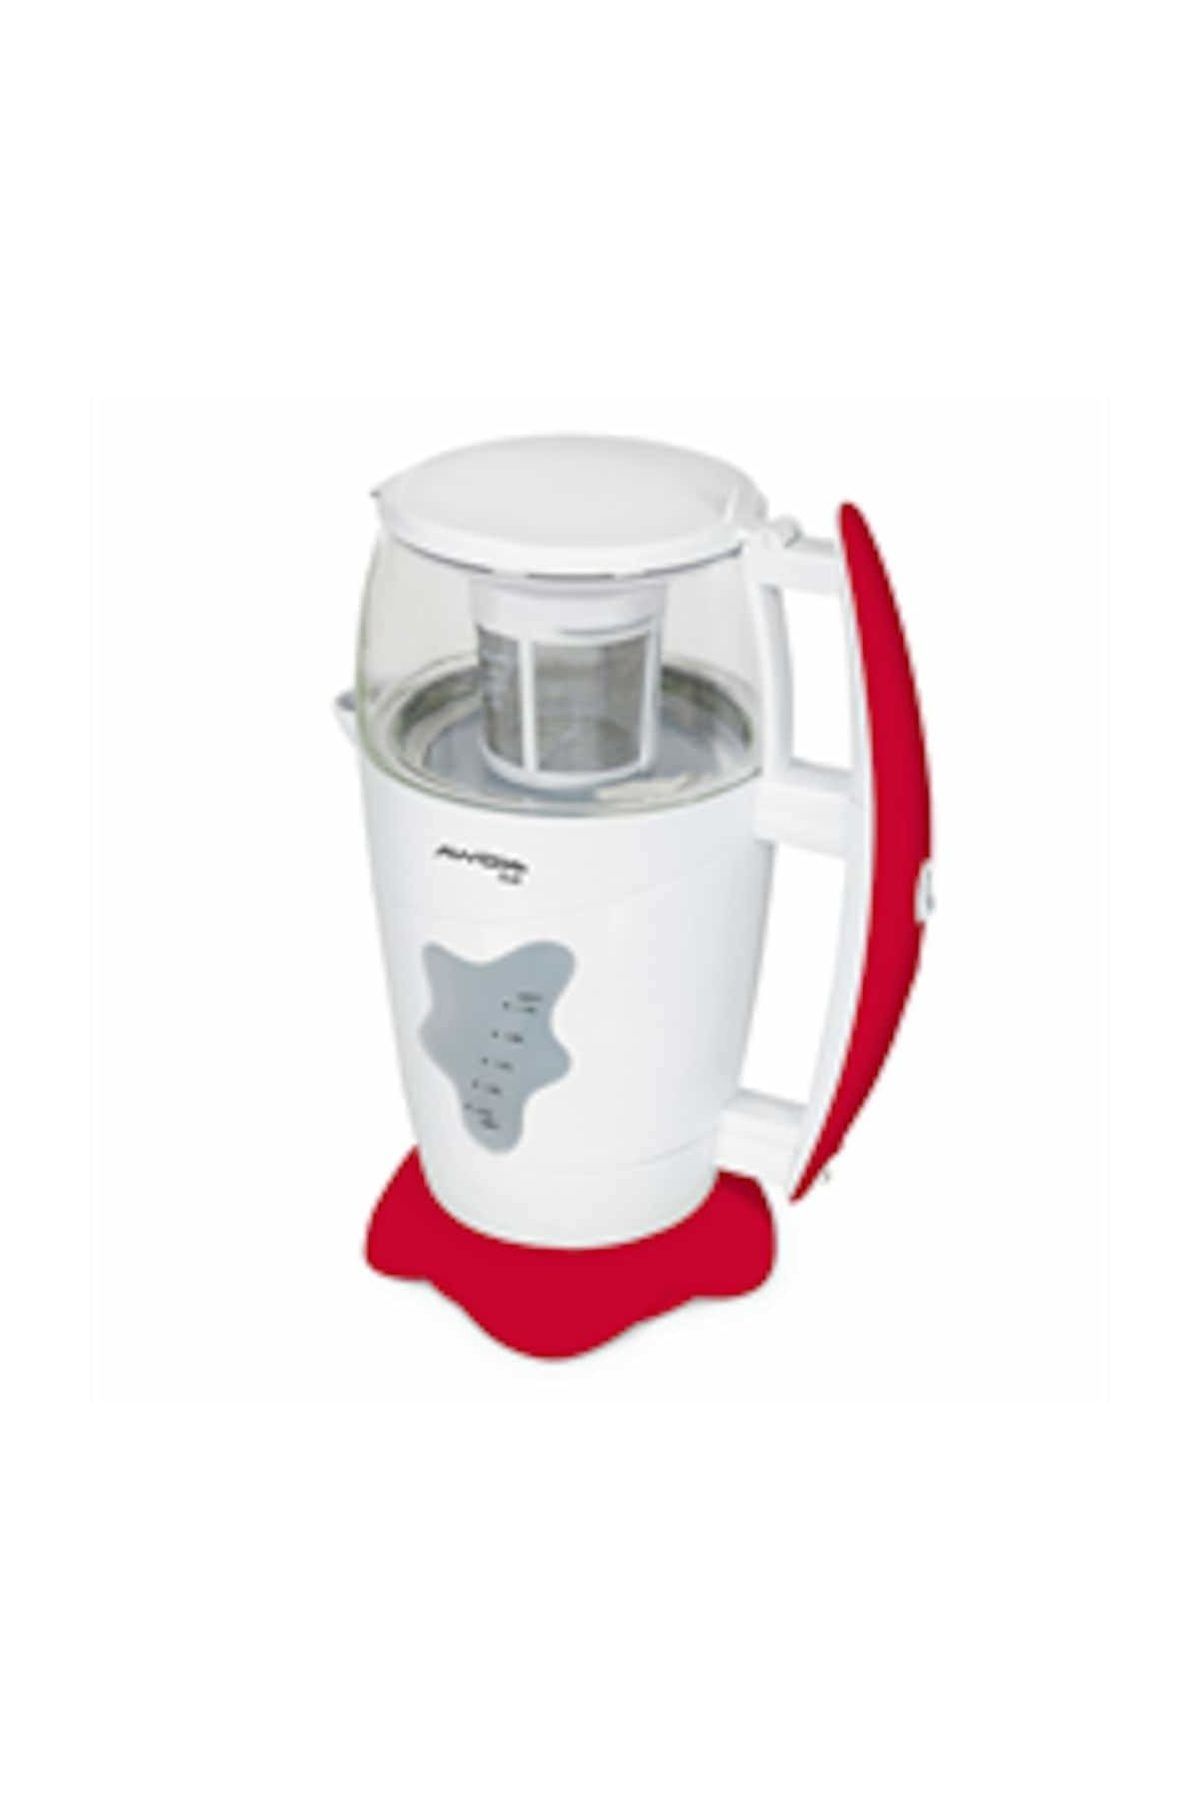 AWOX Dual Elektrikli Çay Makinesi Çaycı